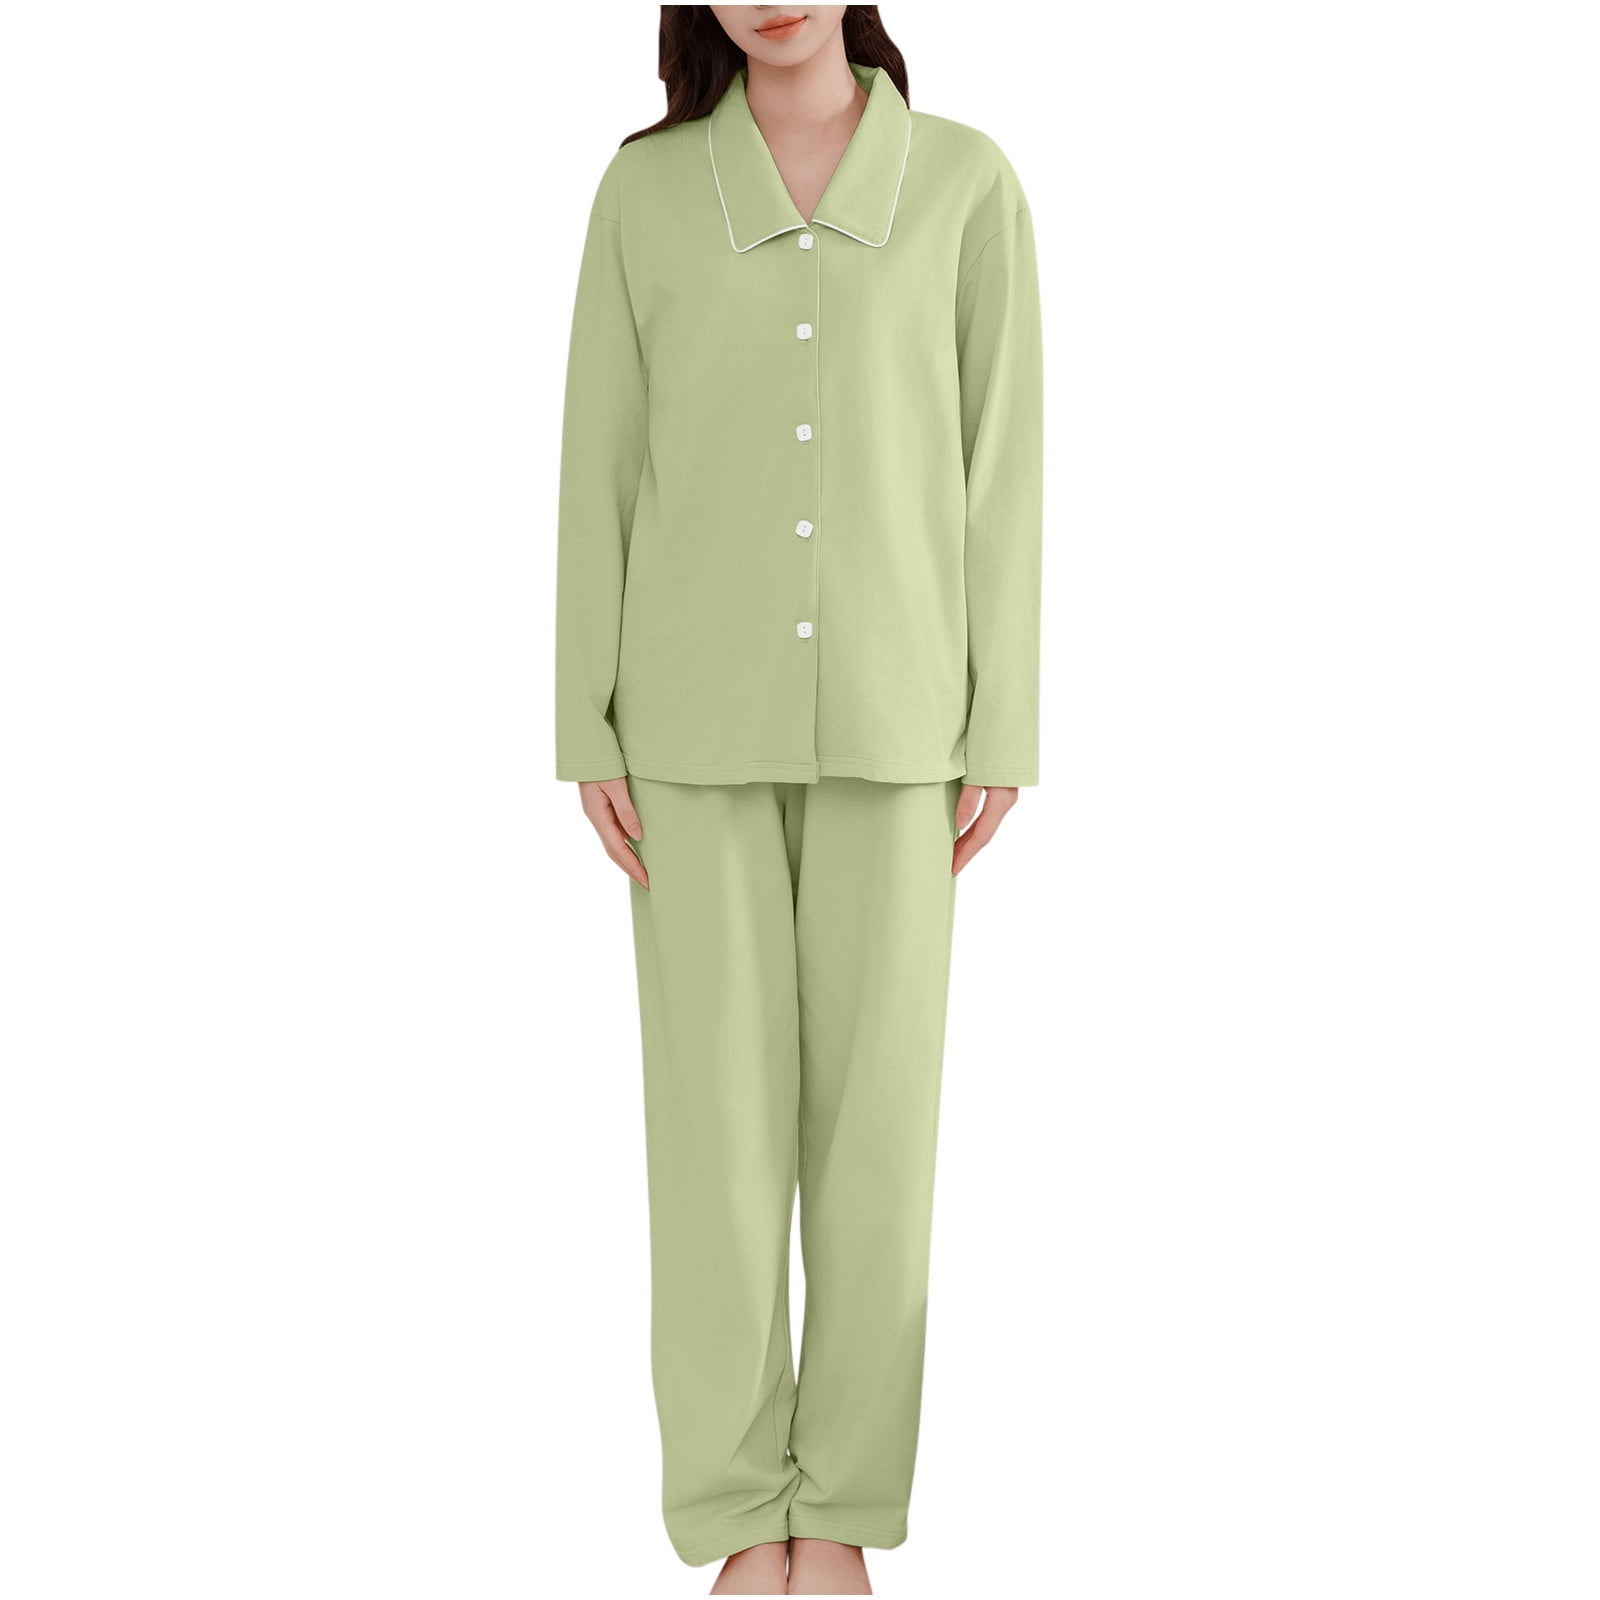 DxhmoneyHX Womens Pajamas Sets Soft Cotton Sleepwear Matching Gifts ...